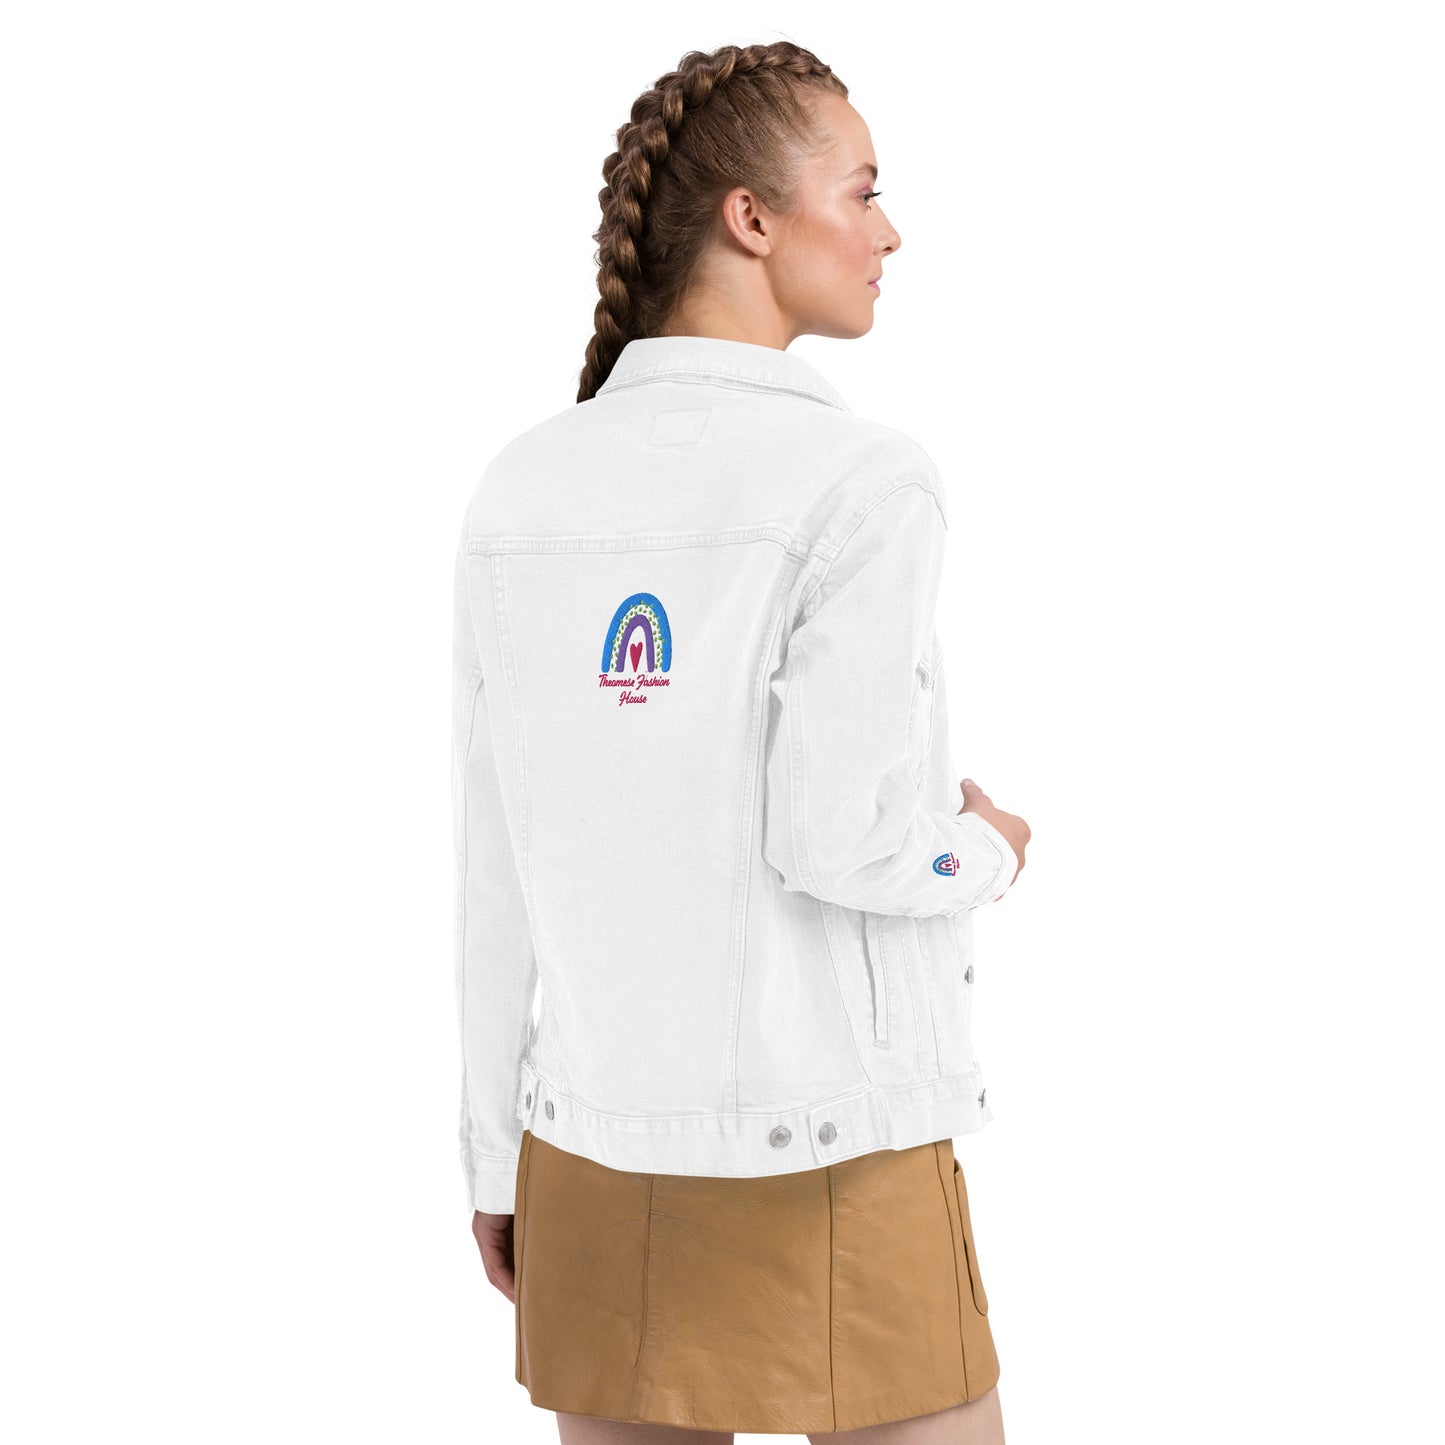 Signature-Unisex Denim Jacket with Cuff Design